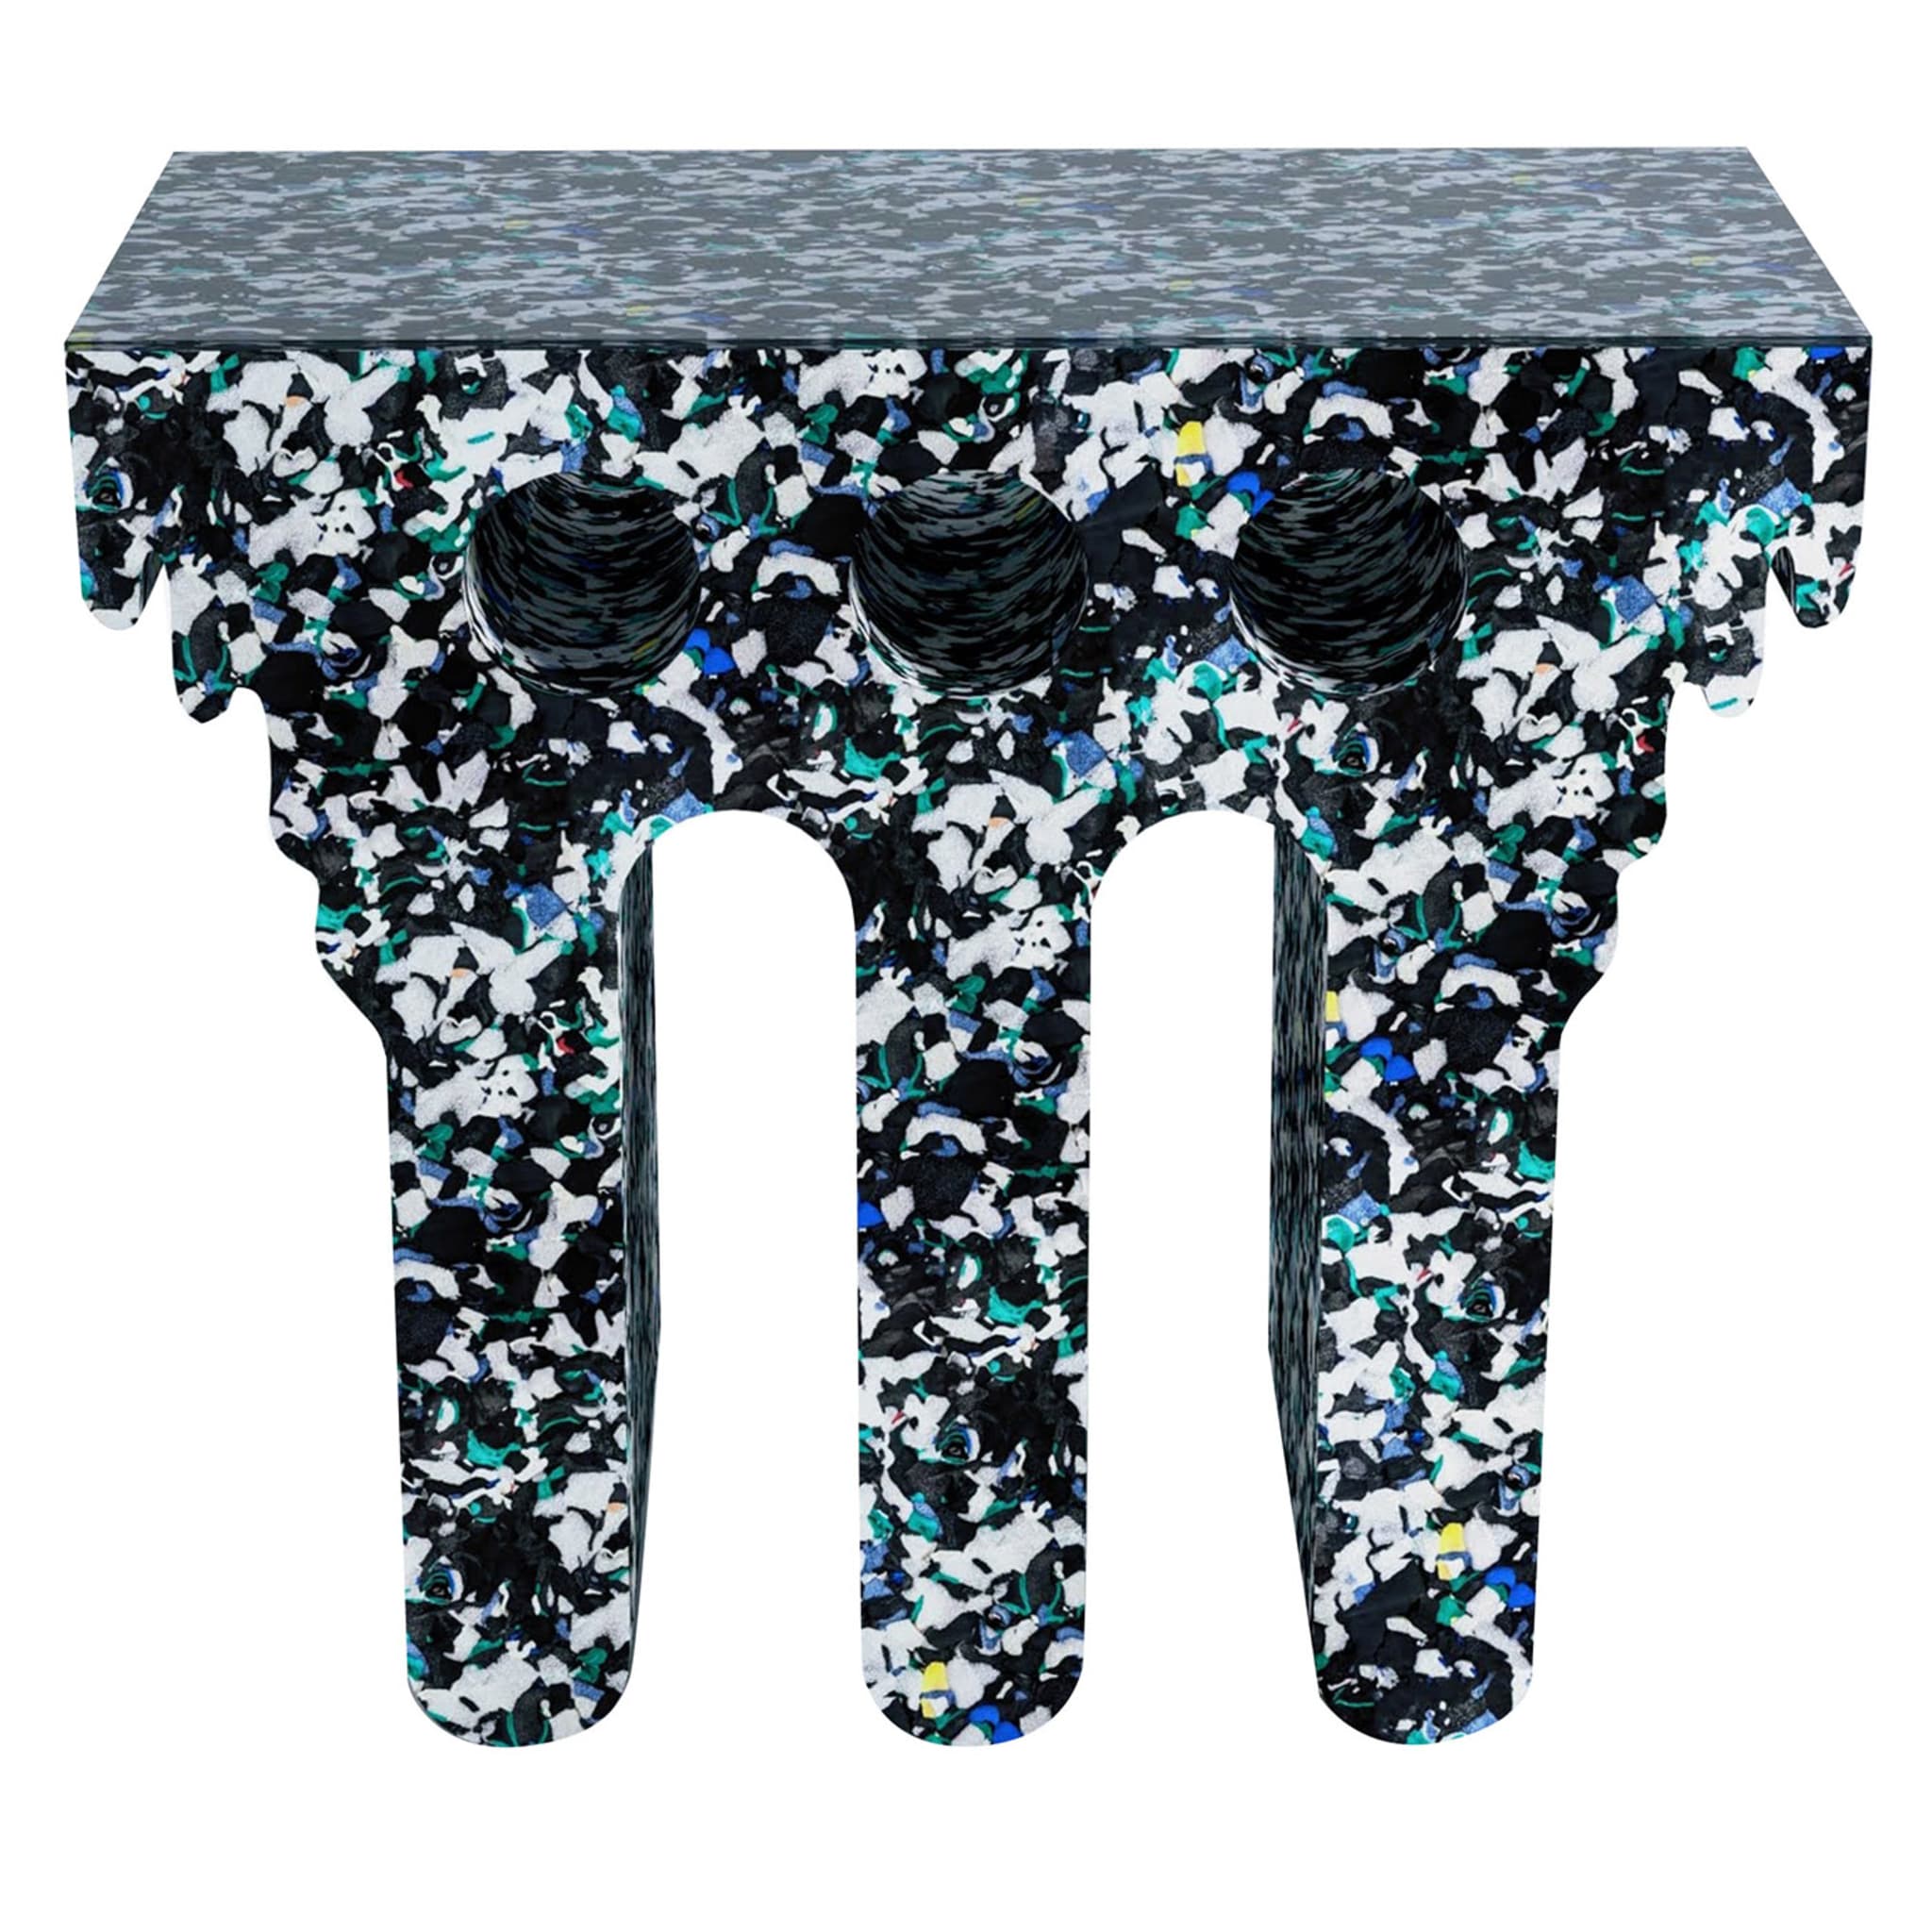 Table Console Sphinx recyclée par Clemence Seilles - Vue principale